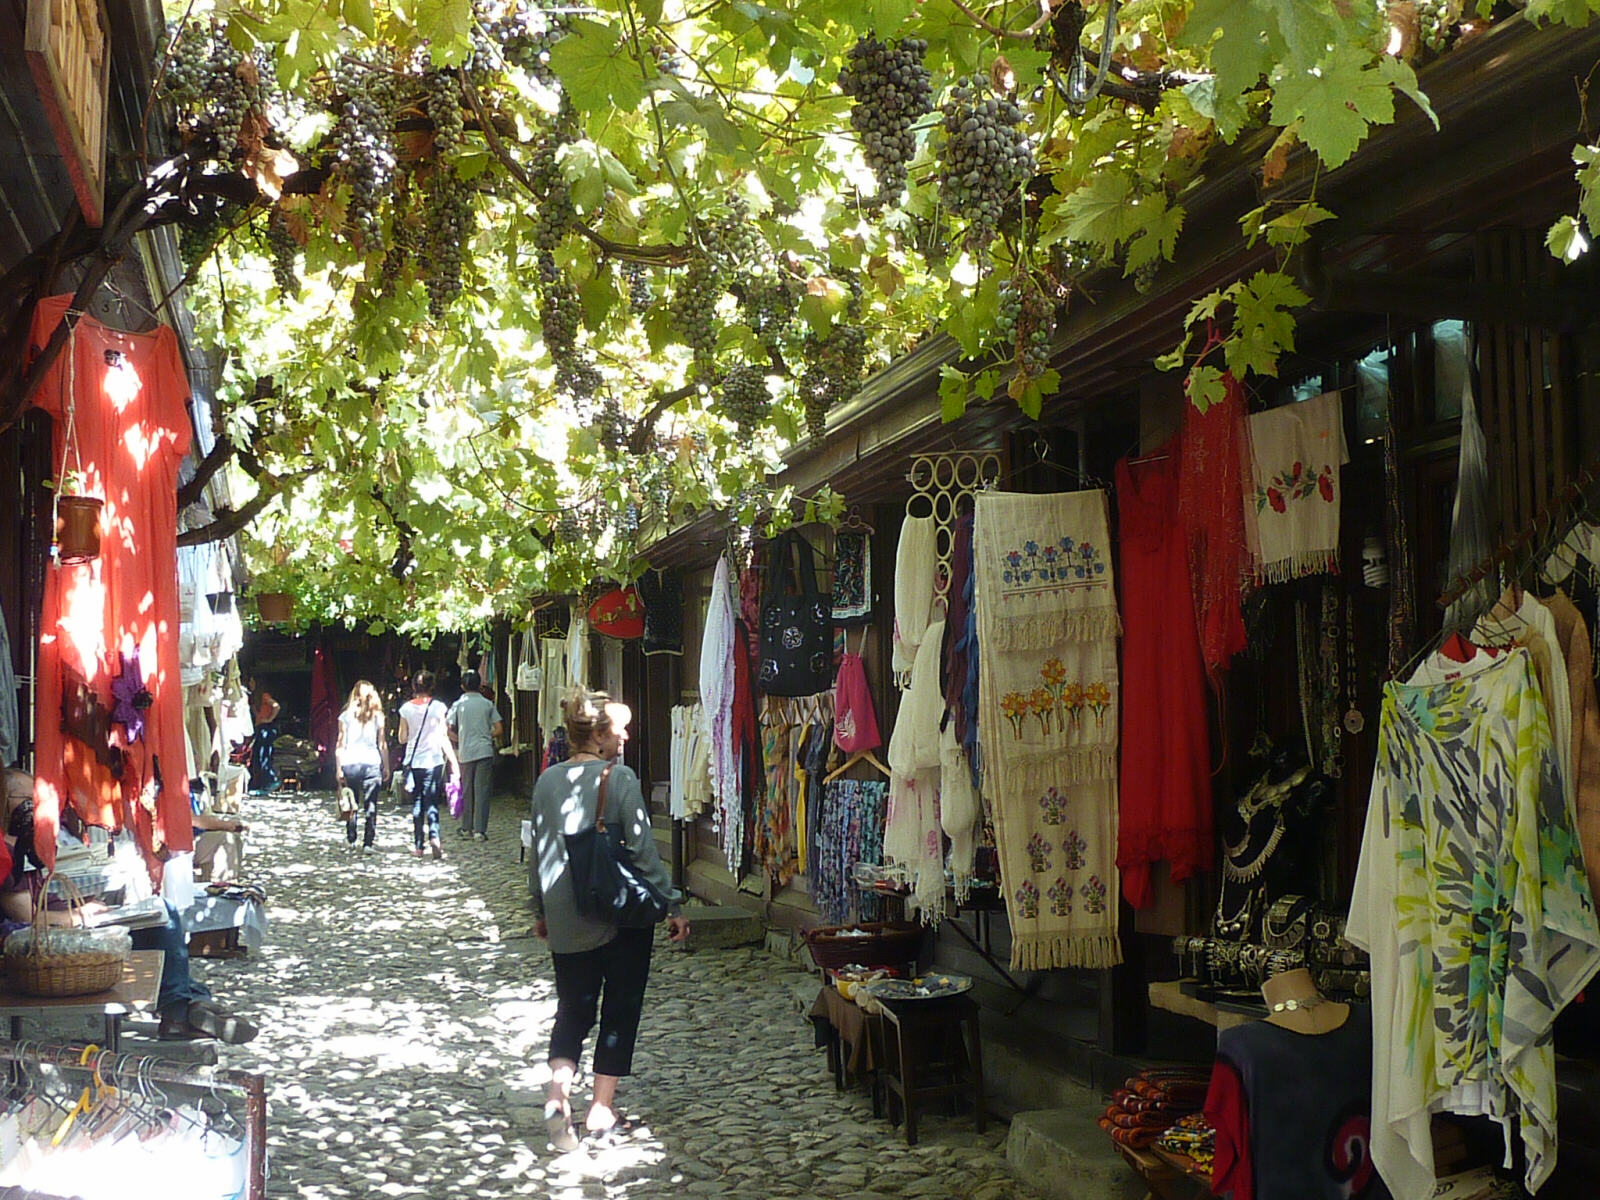 Arastasi bazaar in Safranbolu, Turkey